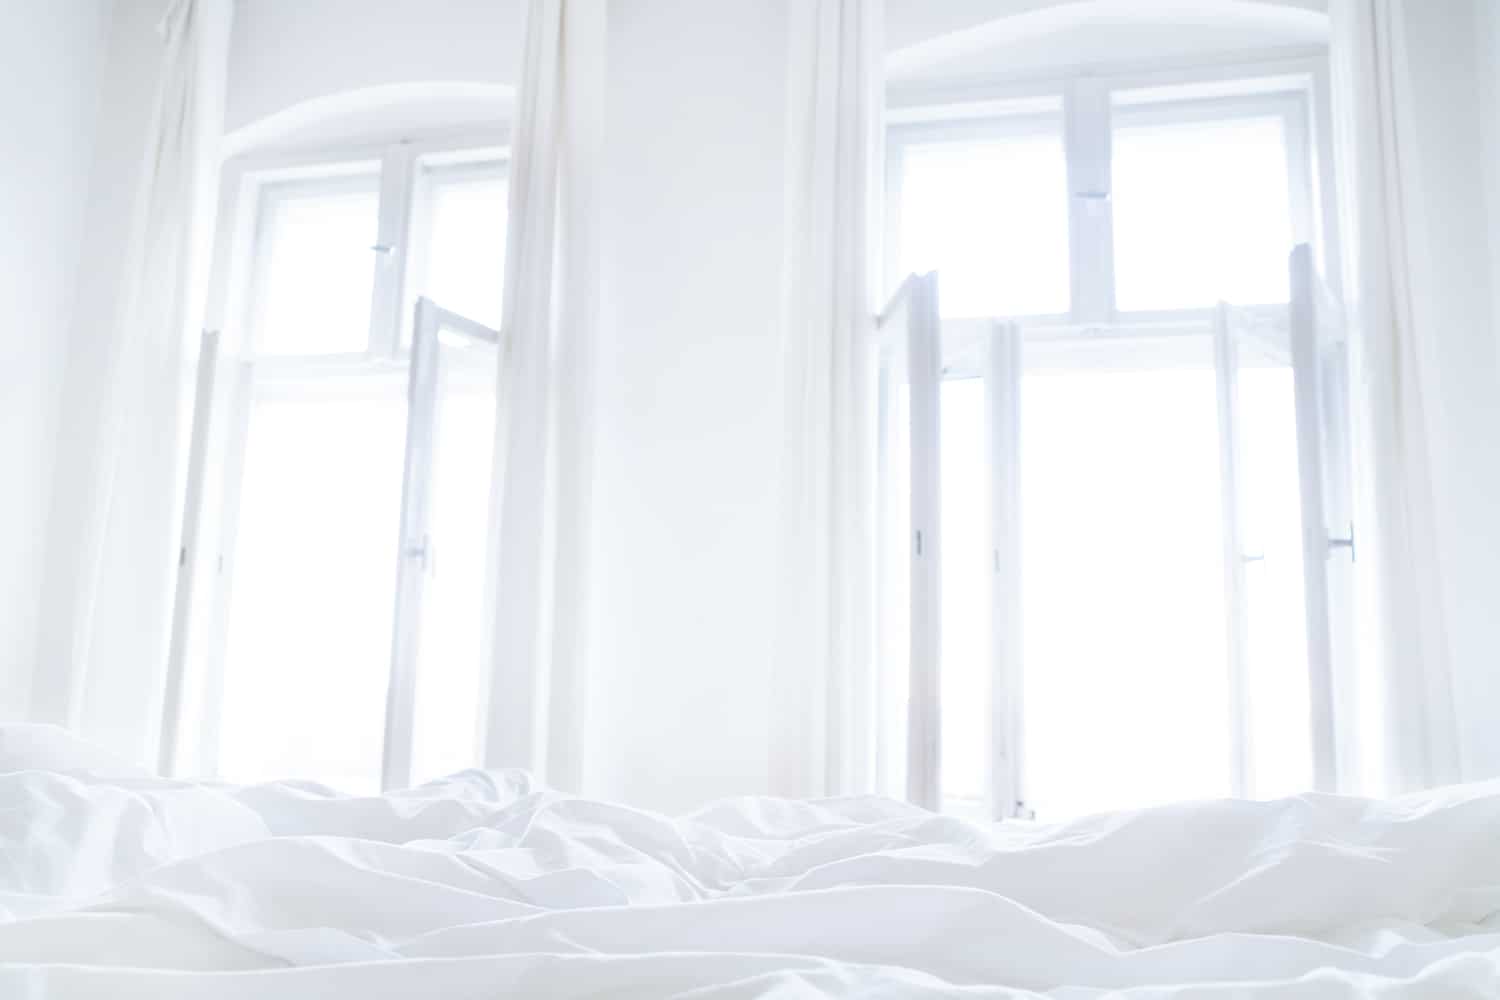 Comment bien dormir : 6 conseils pour mieux dormir quand il fait chaud